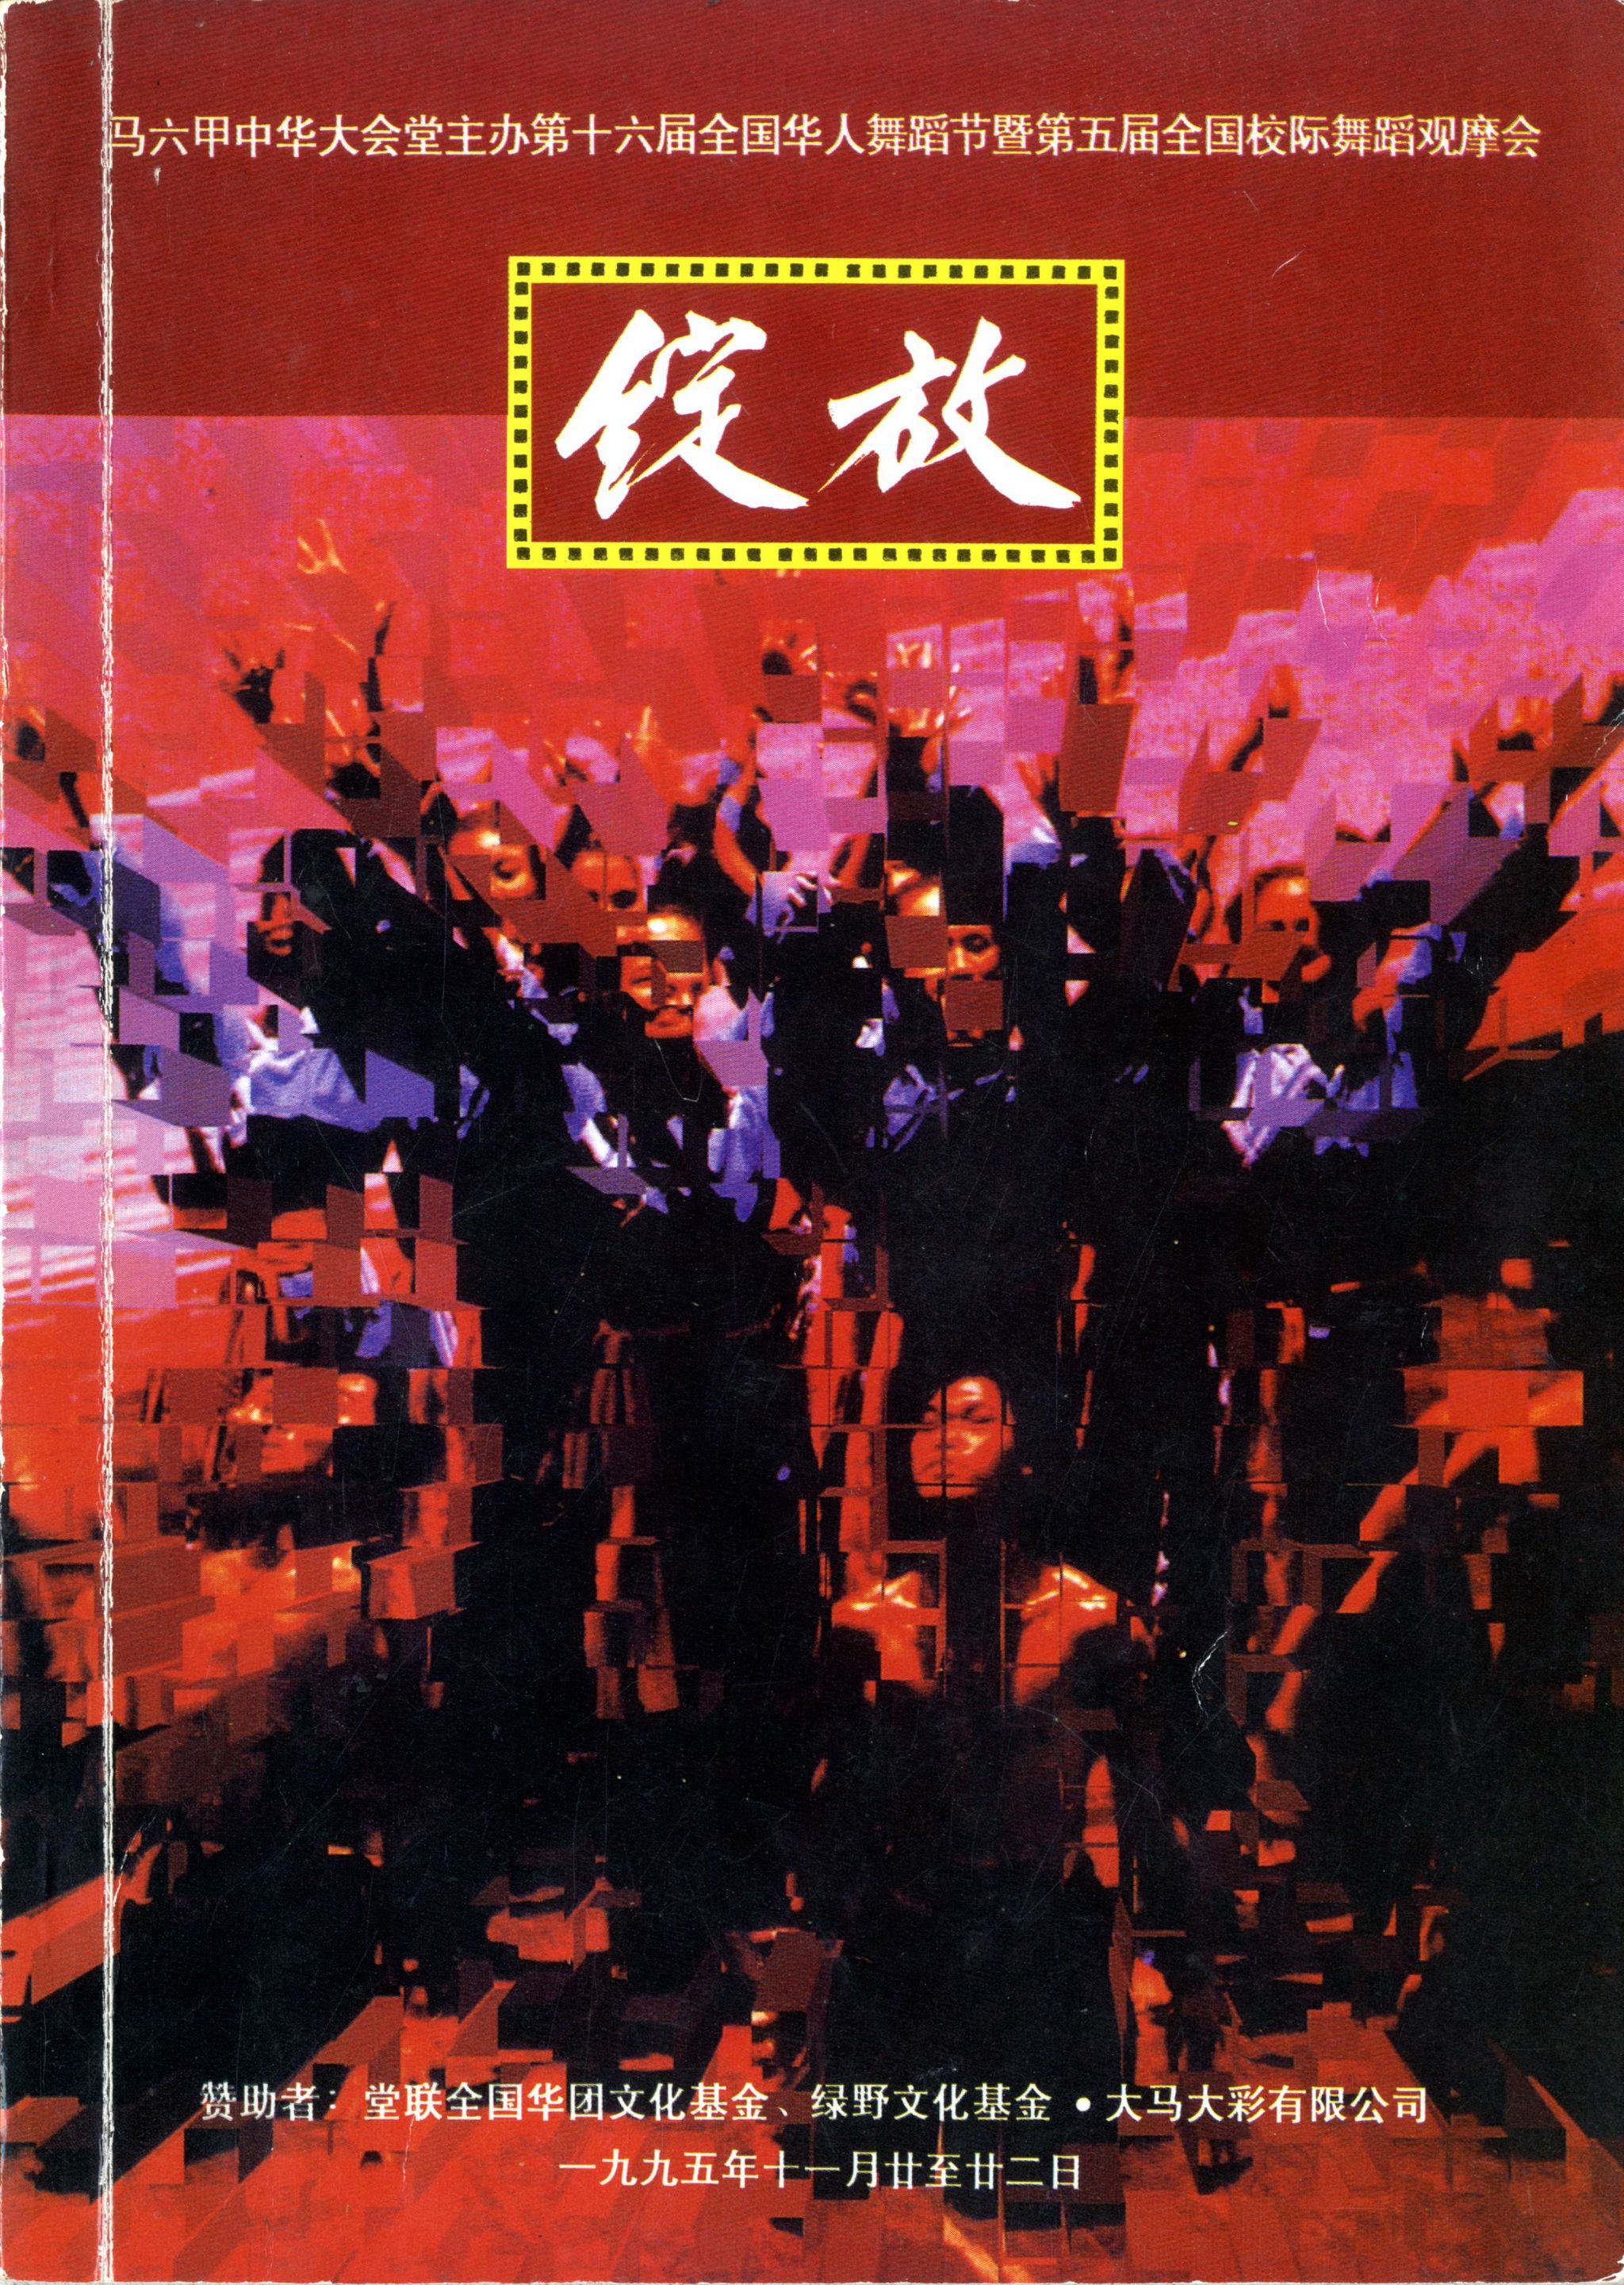 1995 Pesta Tarian Yang Ke 16 Cover